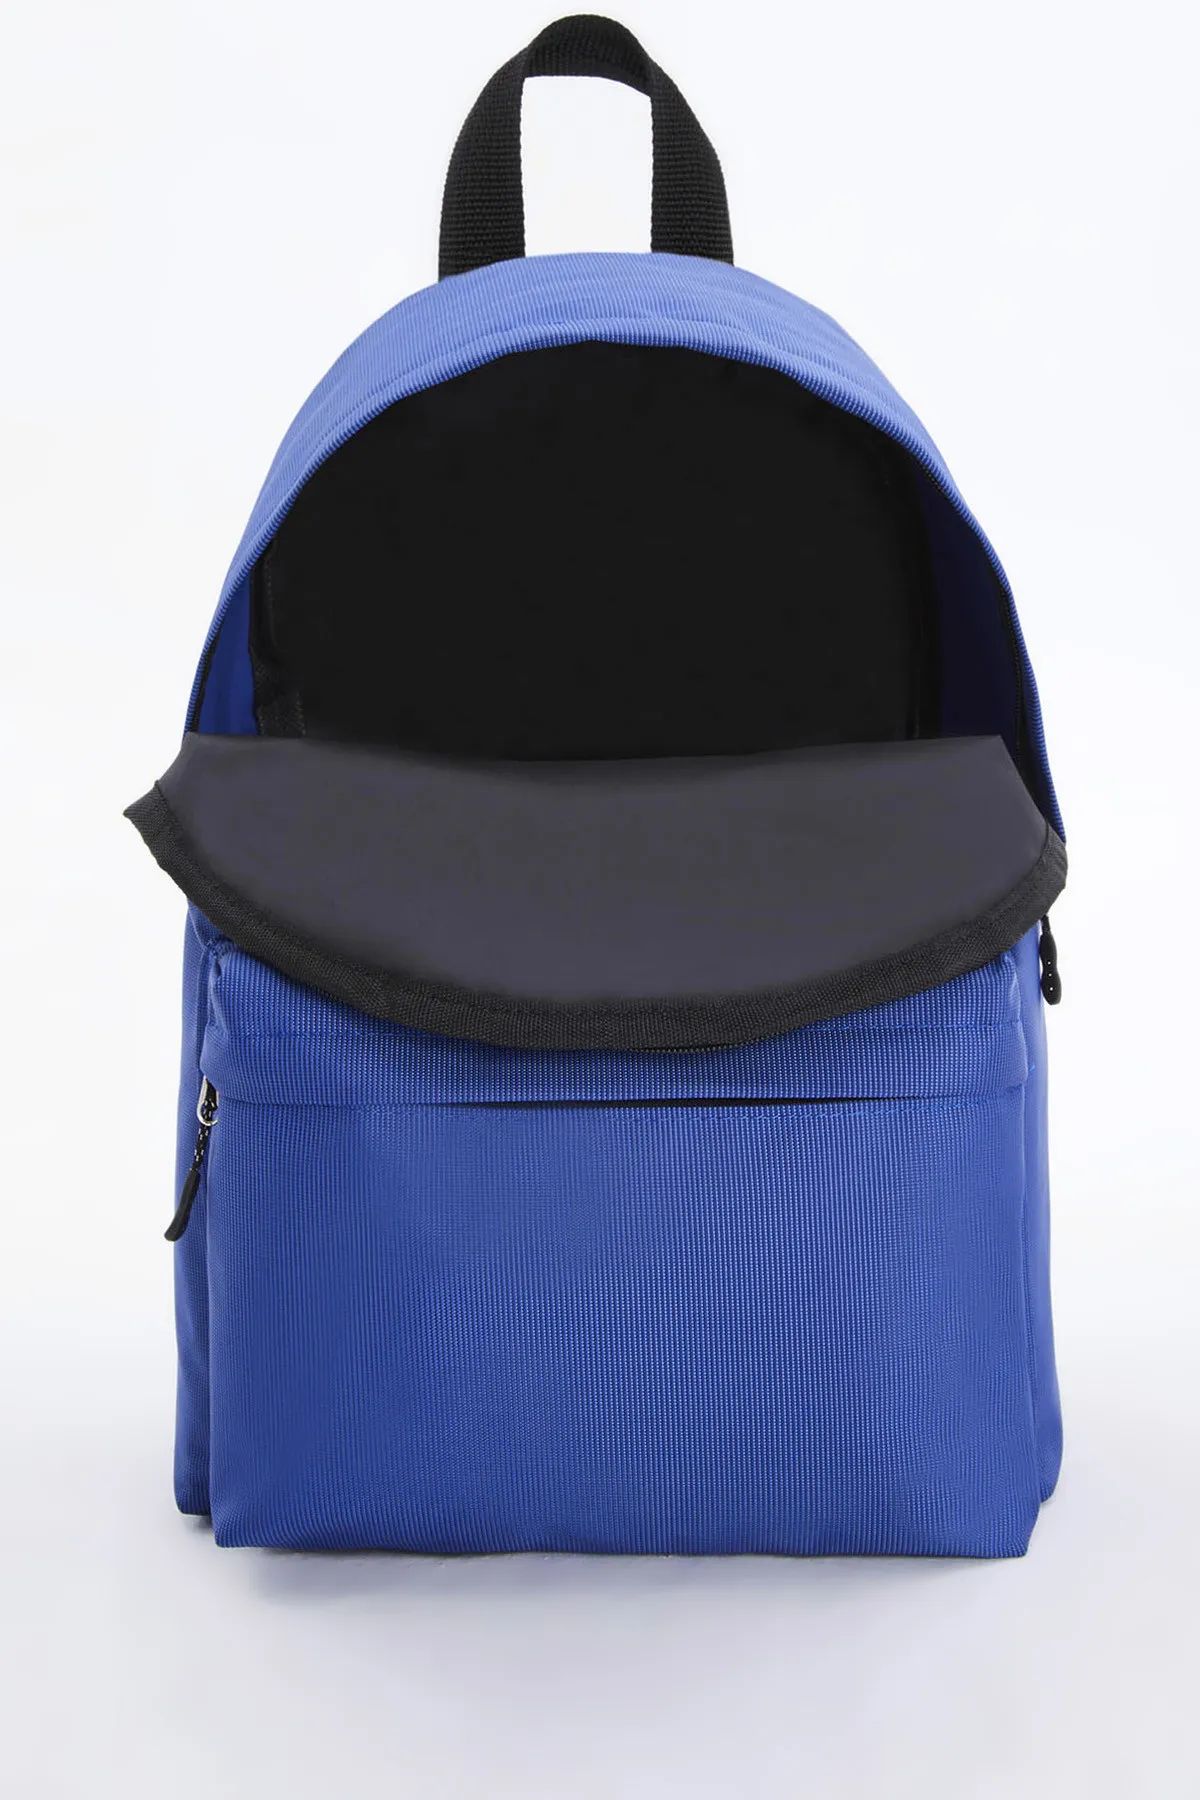 Рюкзак унисекс Di Polo apba0126 темно-синий#7